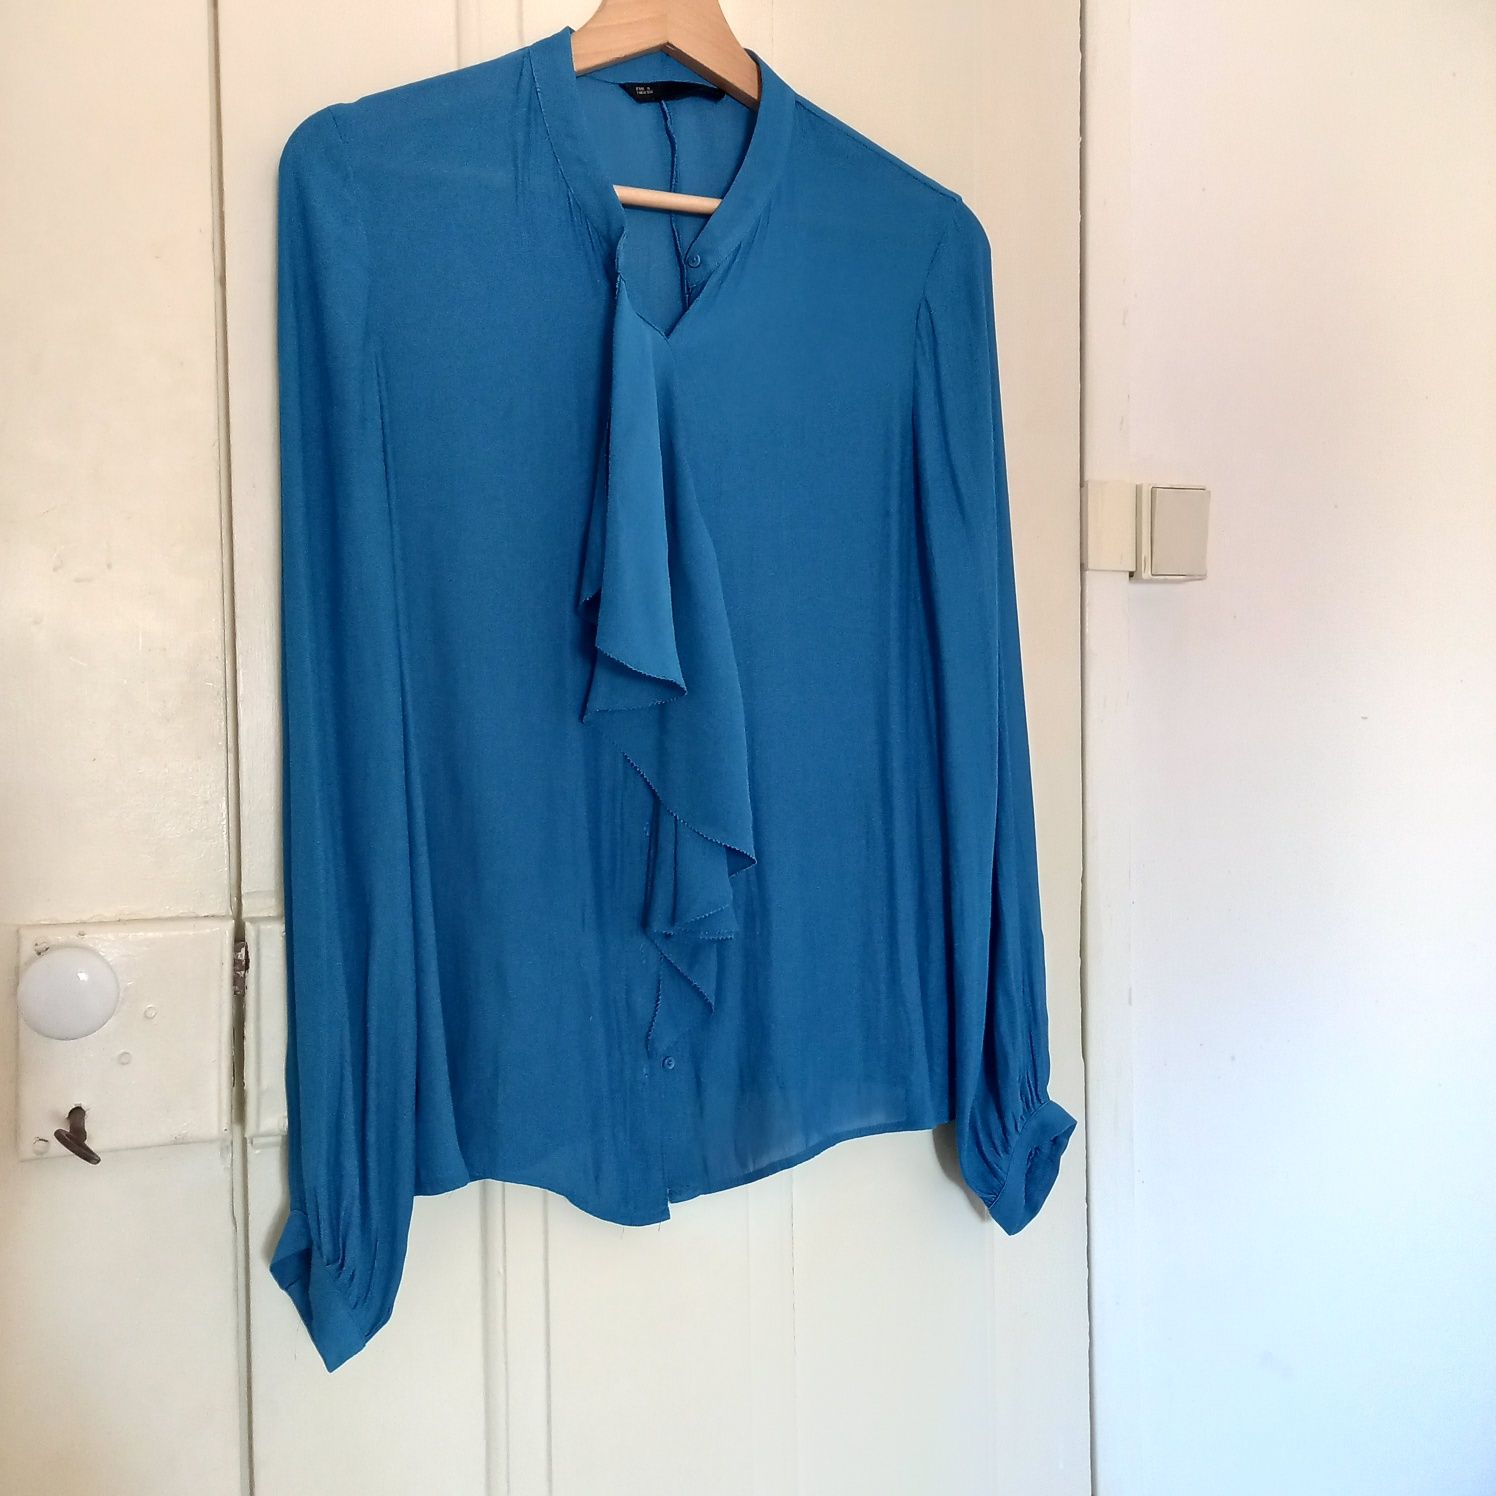 Blusa ou camisa azul com folho